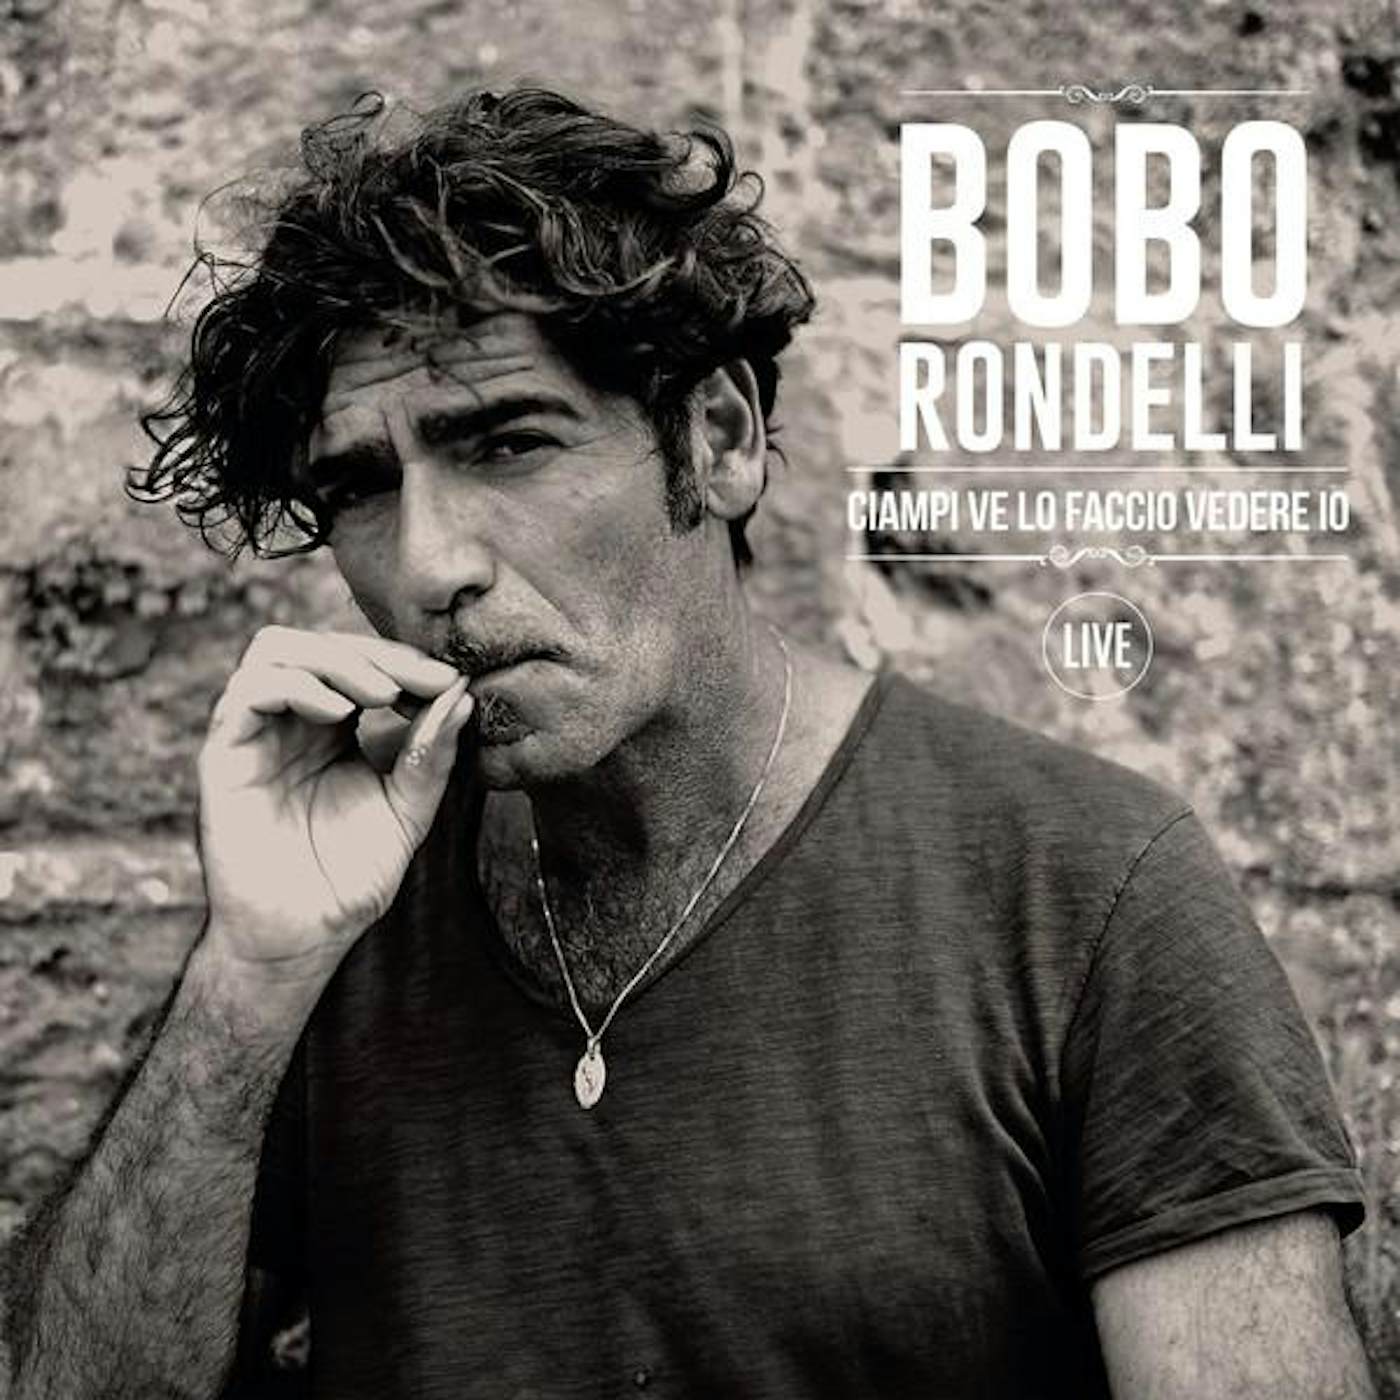 Bobo Rondelli CIAMPI VE LO FACCIO VEDERE IO (LIVE) Vinyl Record